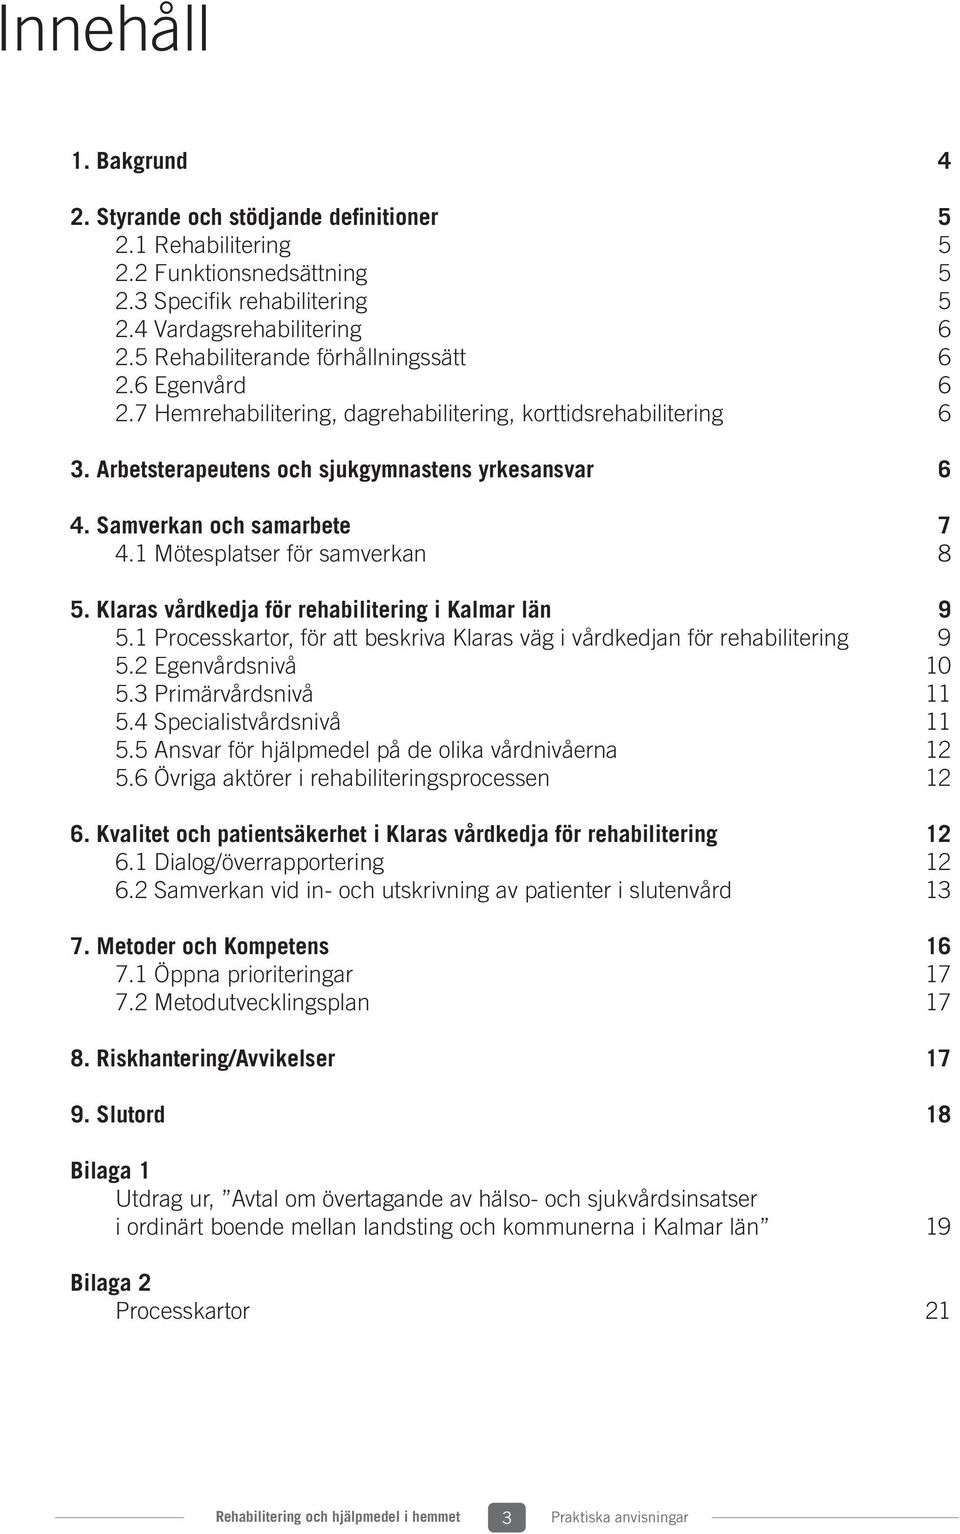 Samverkan och samarbete 7 4.1 Mötesplatser för samverkan 8 5. Klaras vårdkedja för rehabilitering i Kalmar län 9 5.1 Processkartor, för att beskriva Klaras väg i vårdkedjan för rehabilitering 9 5.